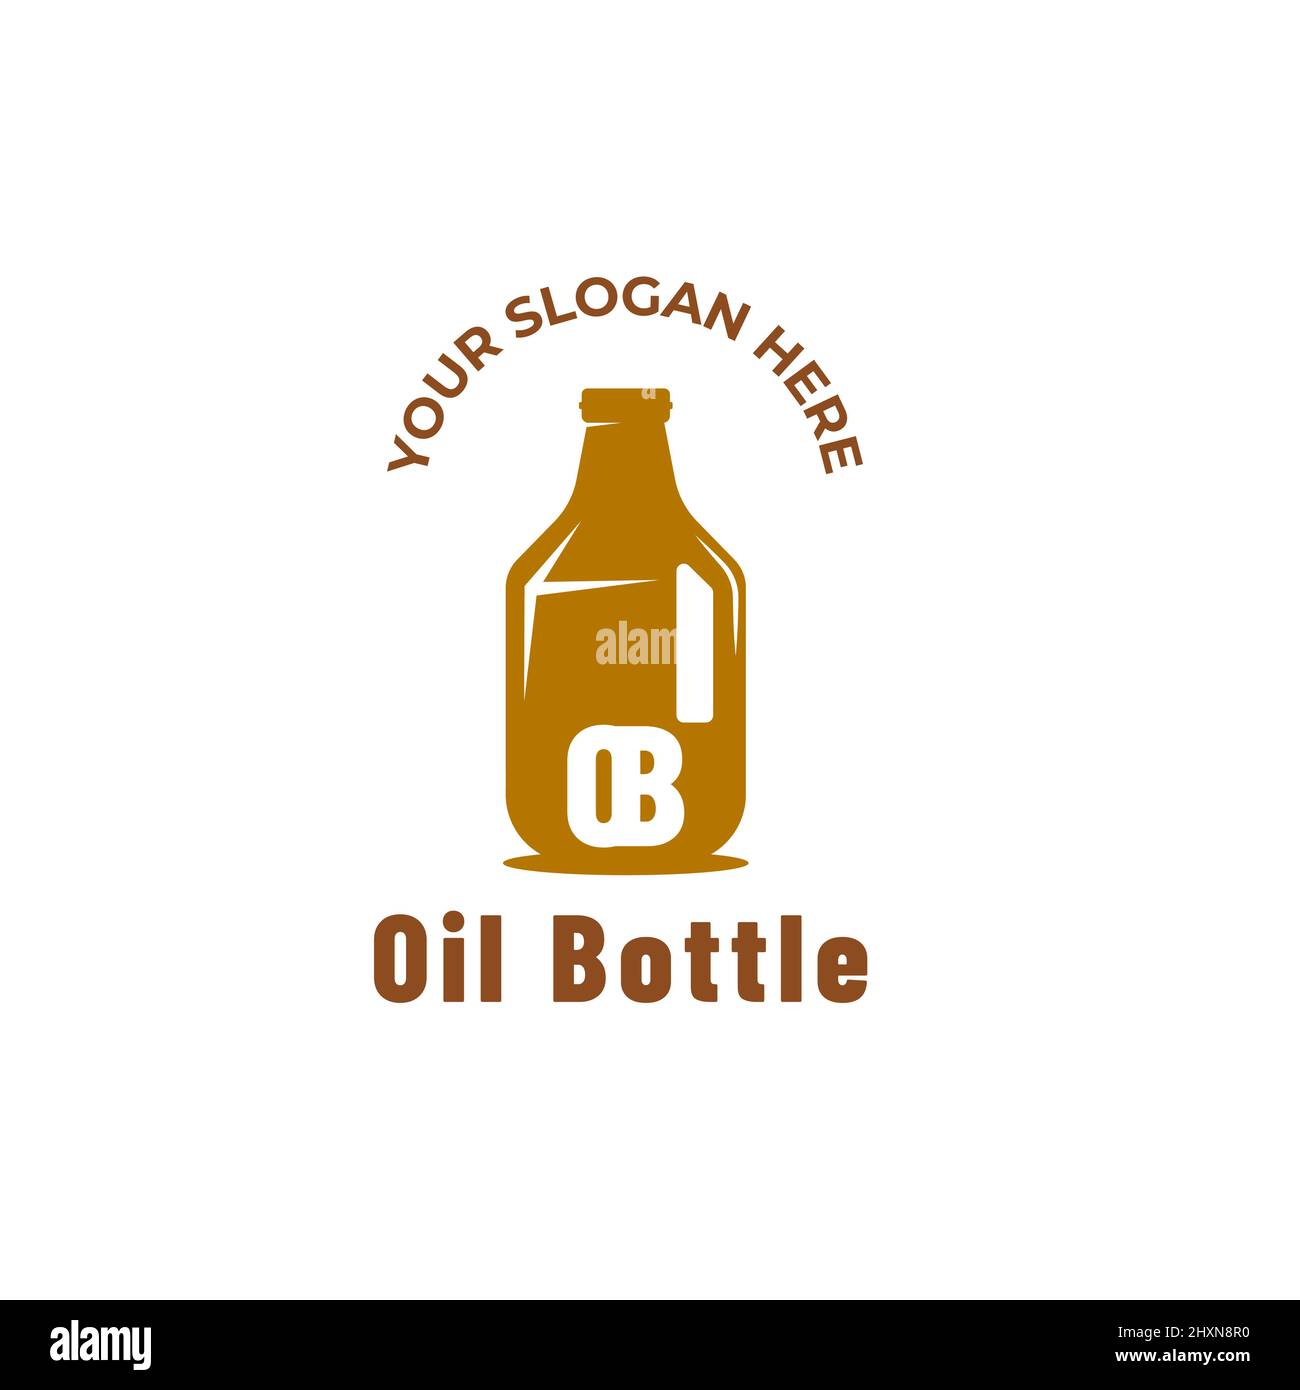 Que signifient vraiment les logos sur les bouteilles en plastique ? - Baröne